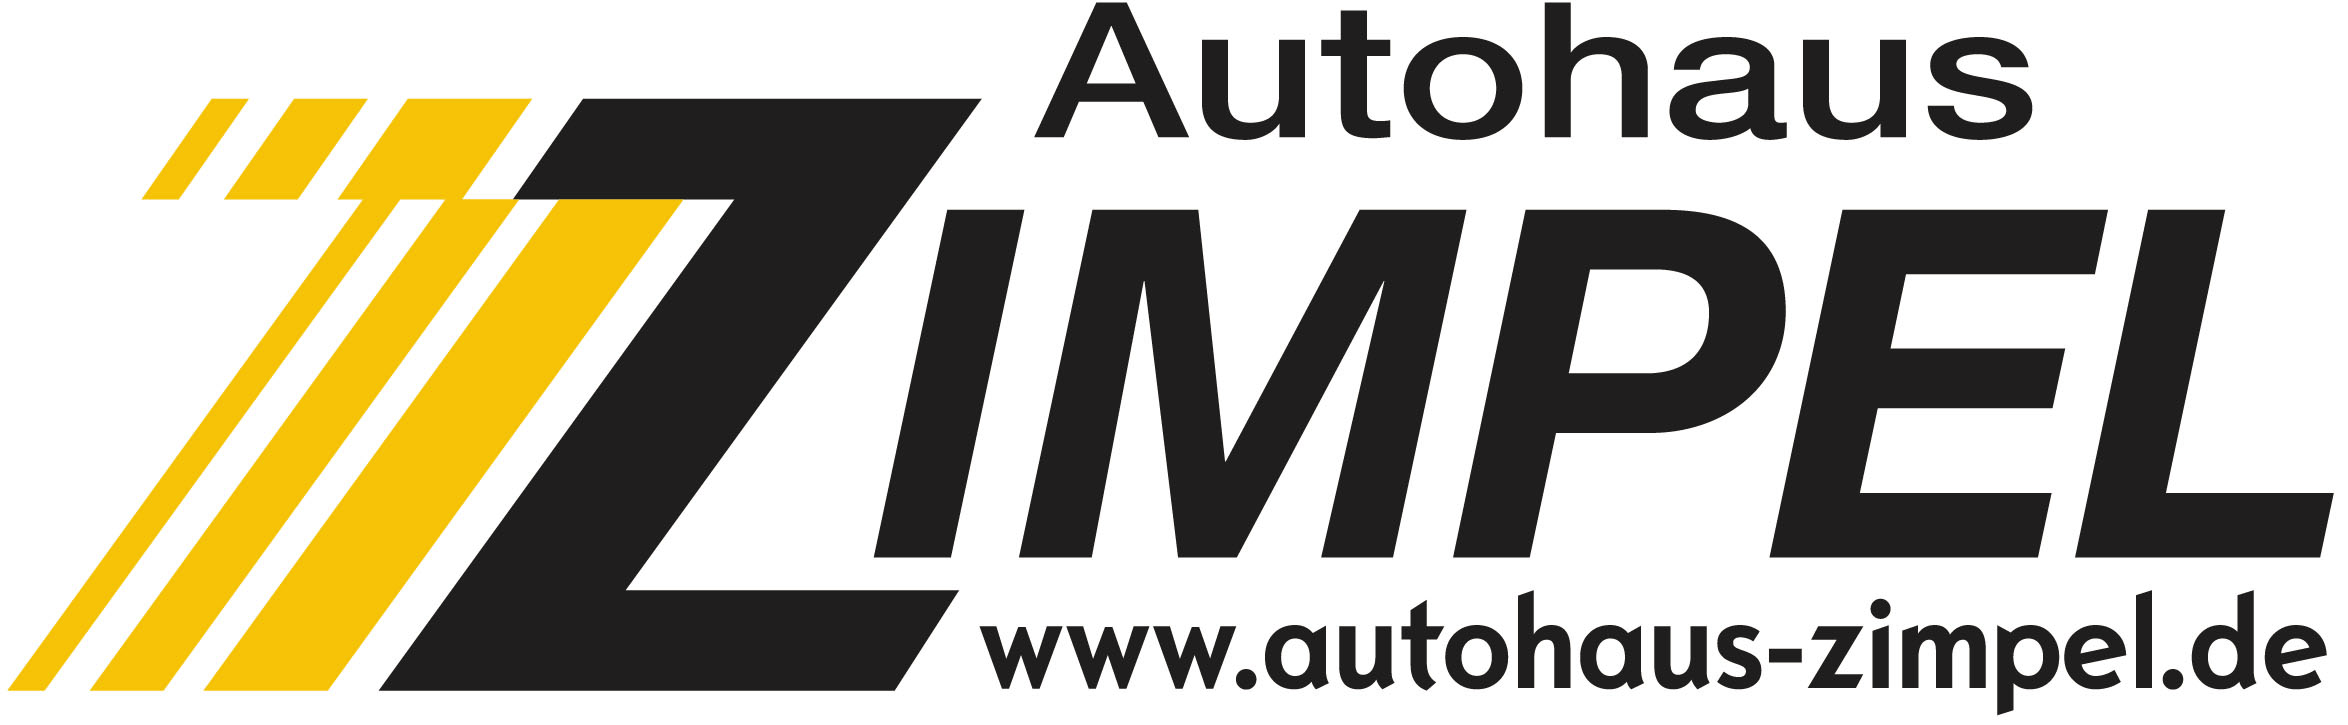 Autohaus Zimpel logo